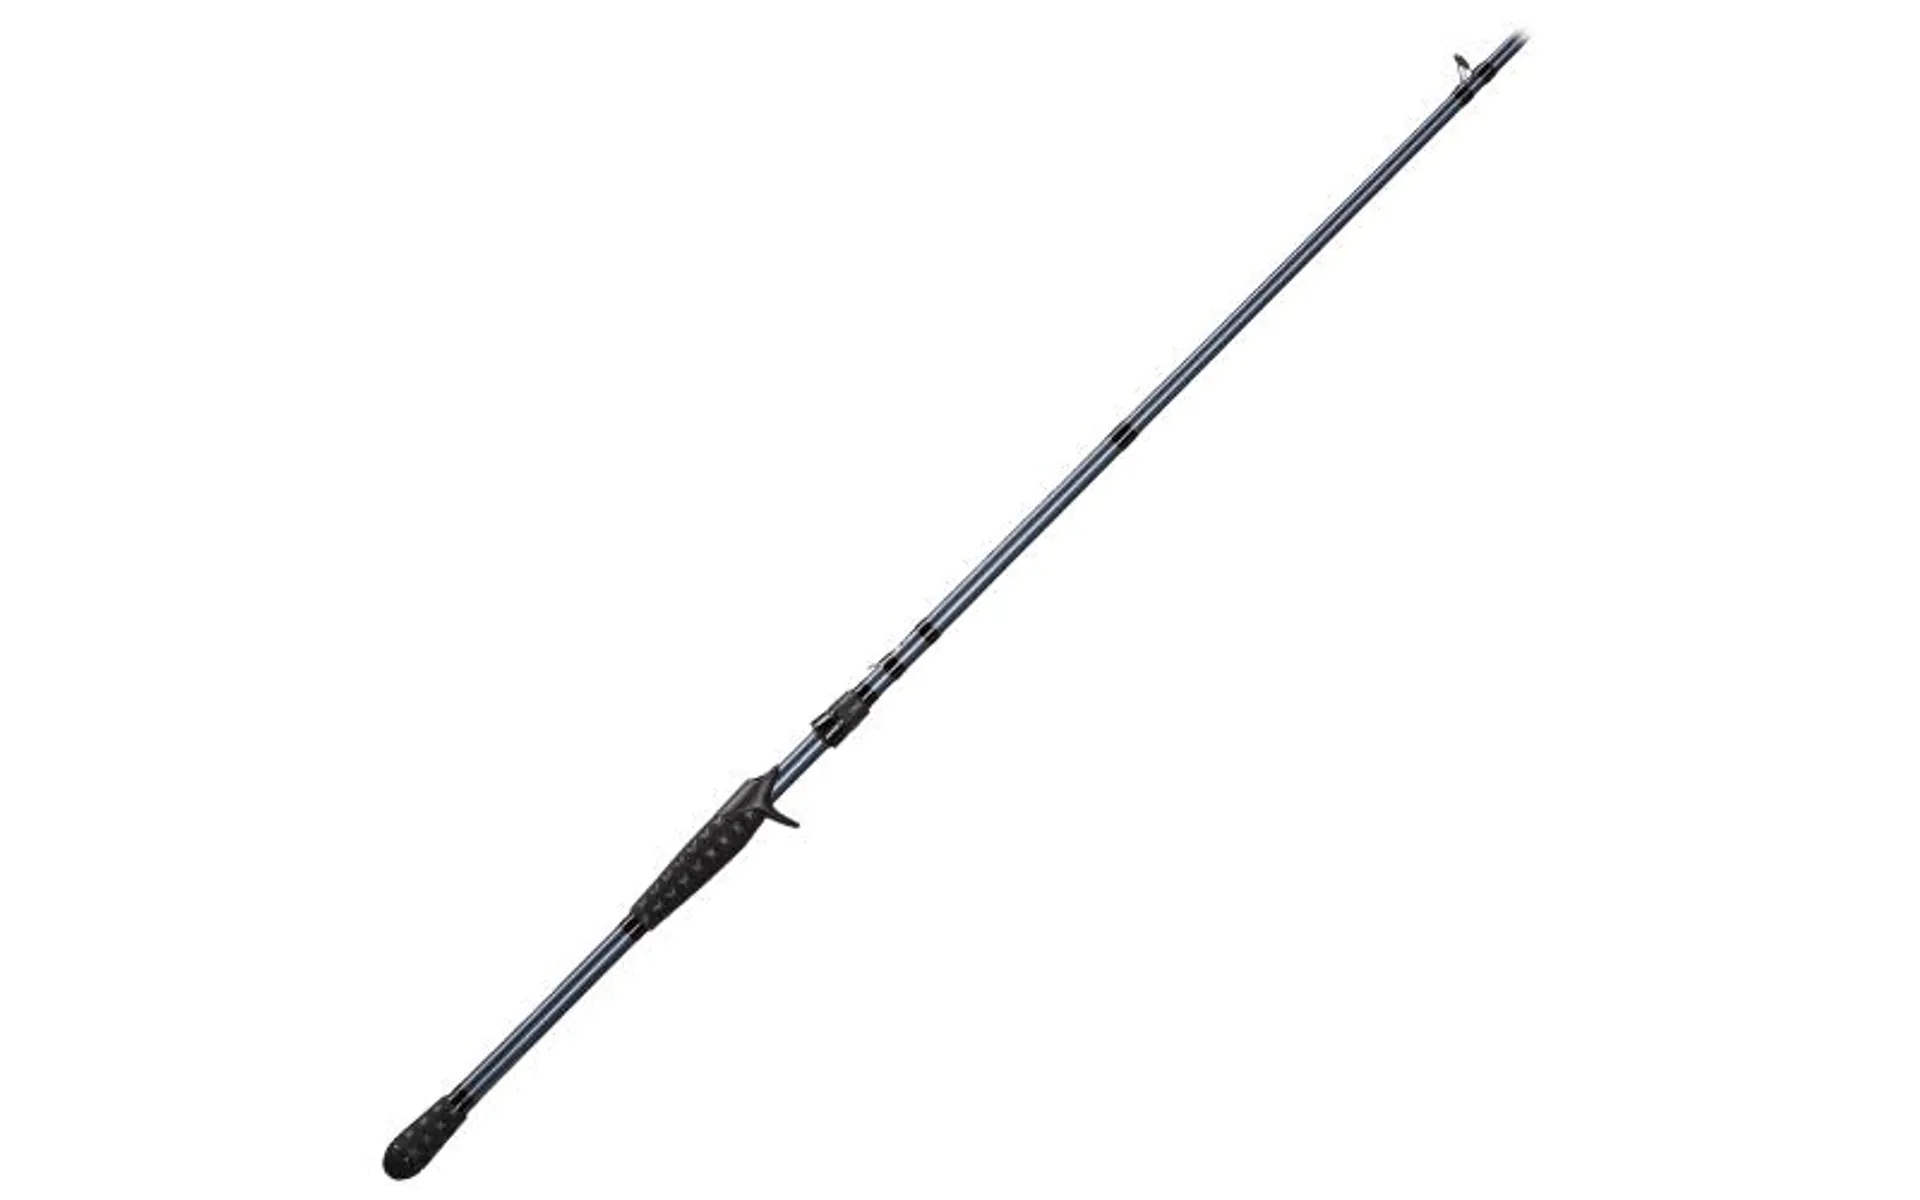 Bass Pro Shops Pro Qualifier Casting Rod